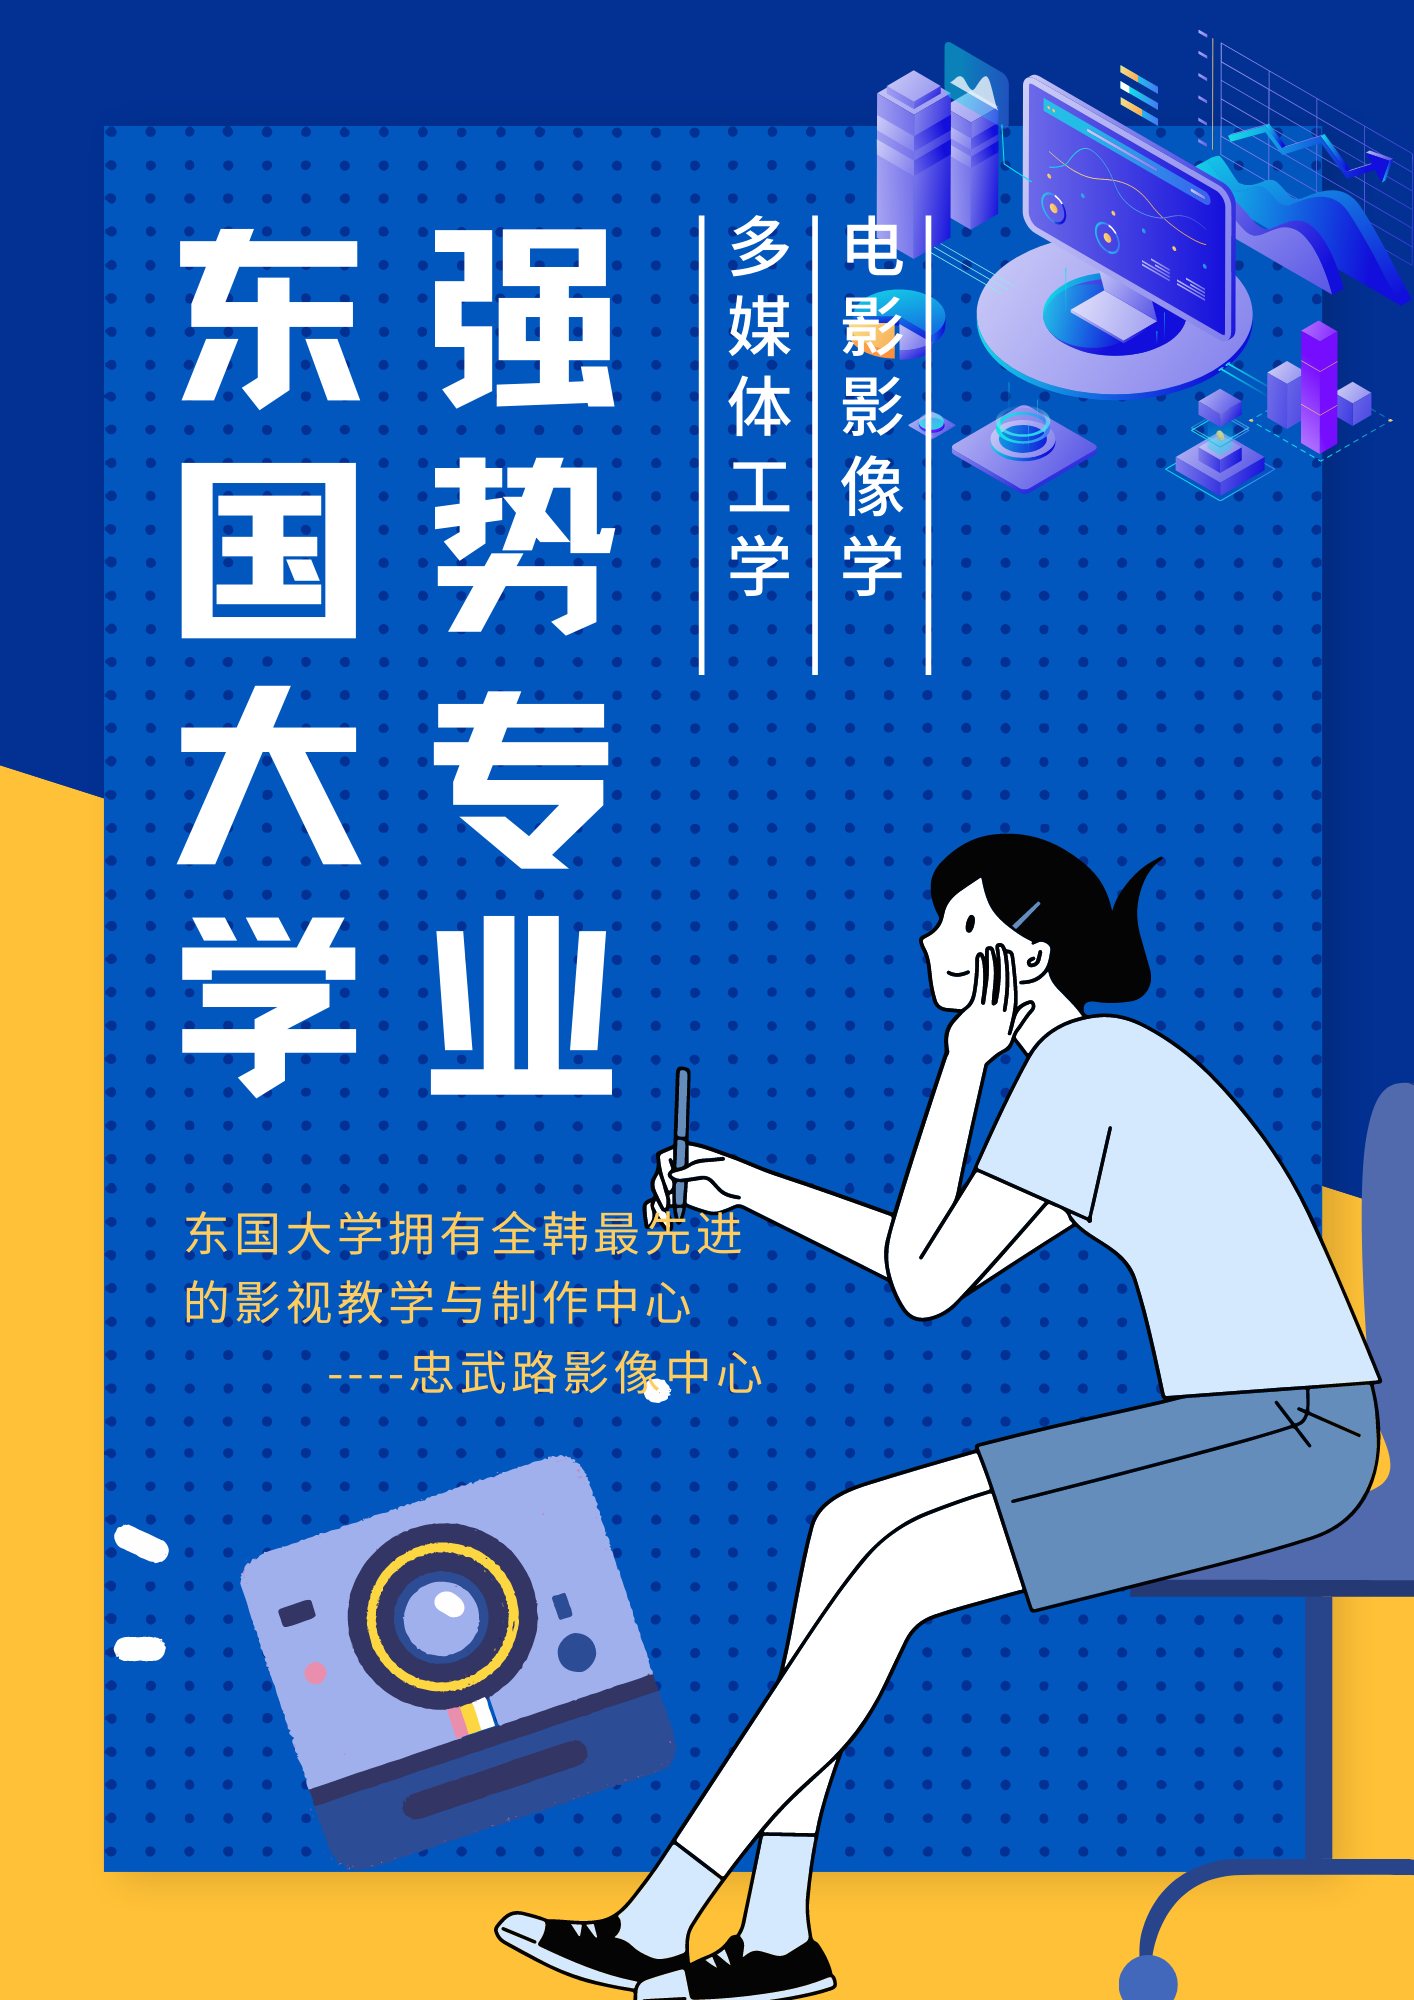 蓝黄色托脸学生插画矢量高考节日促销中文传单.png